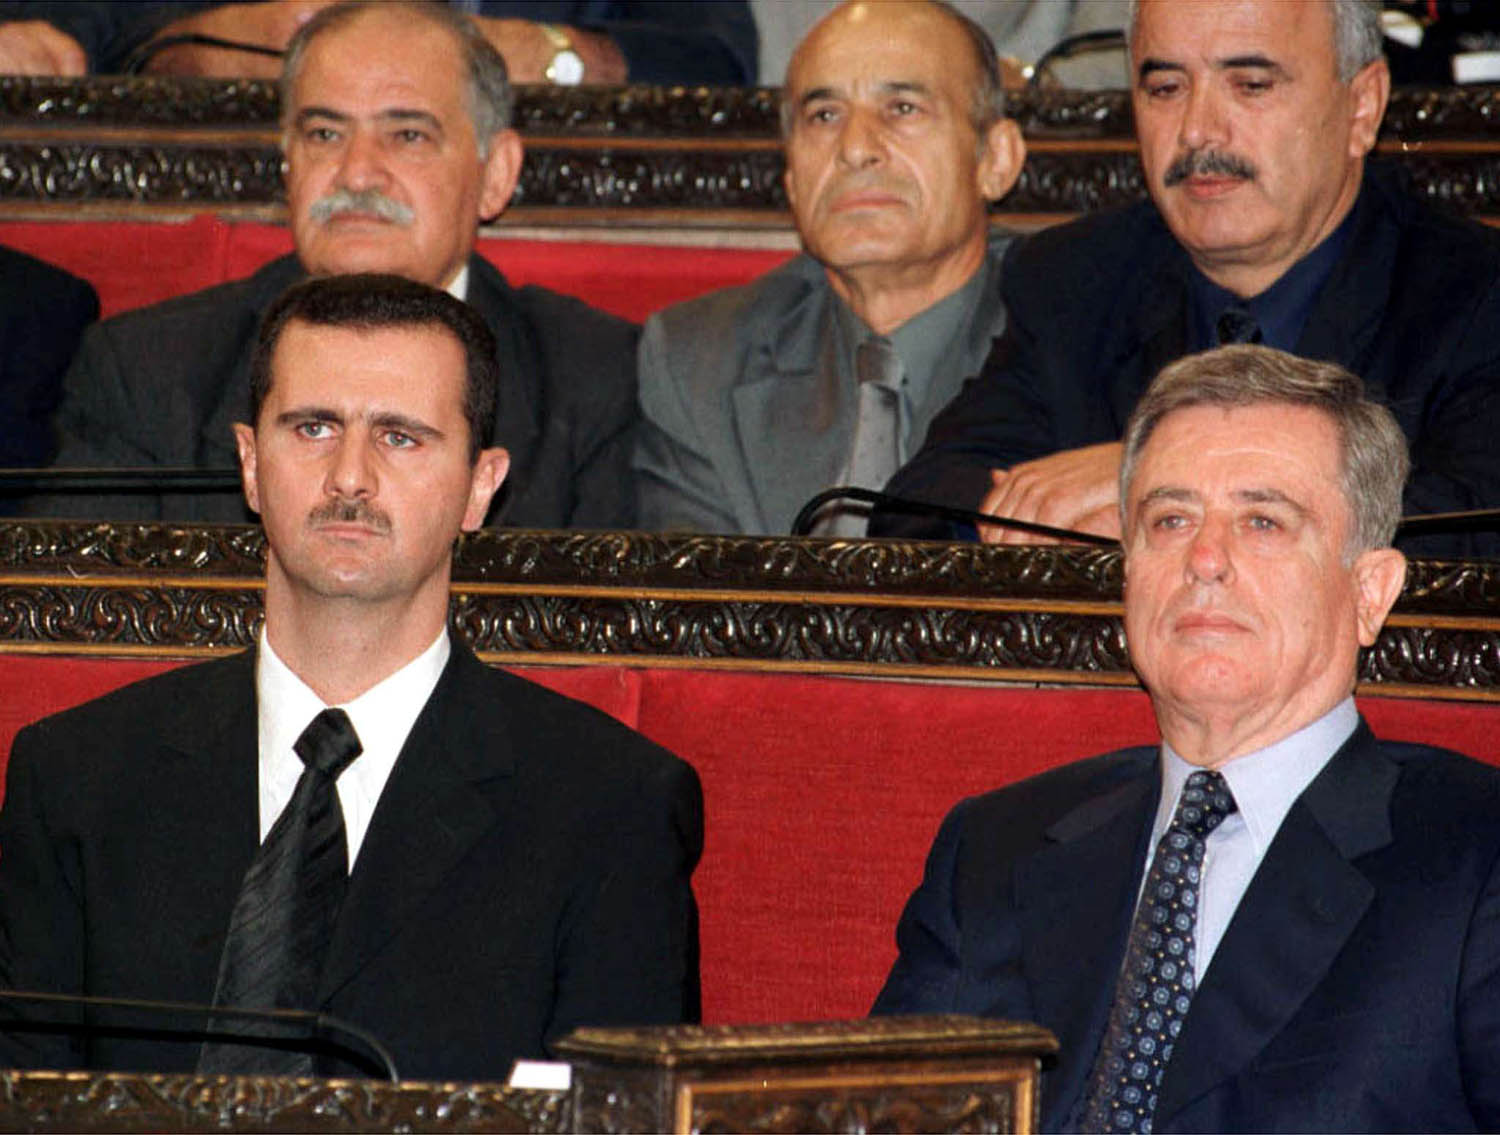 الرئيس السوري بشار الأسد يوم تنصيبه وإلى جانبه نائب الرئيس (الرئيس المؤقت) عبدالحليم خدام